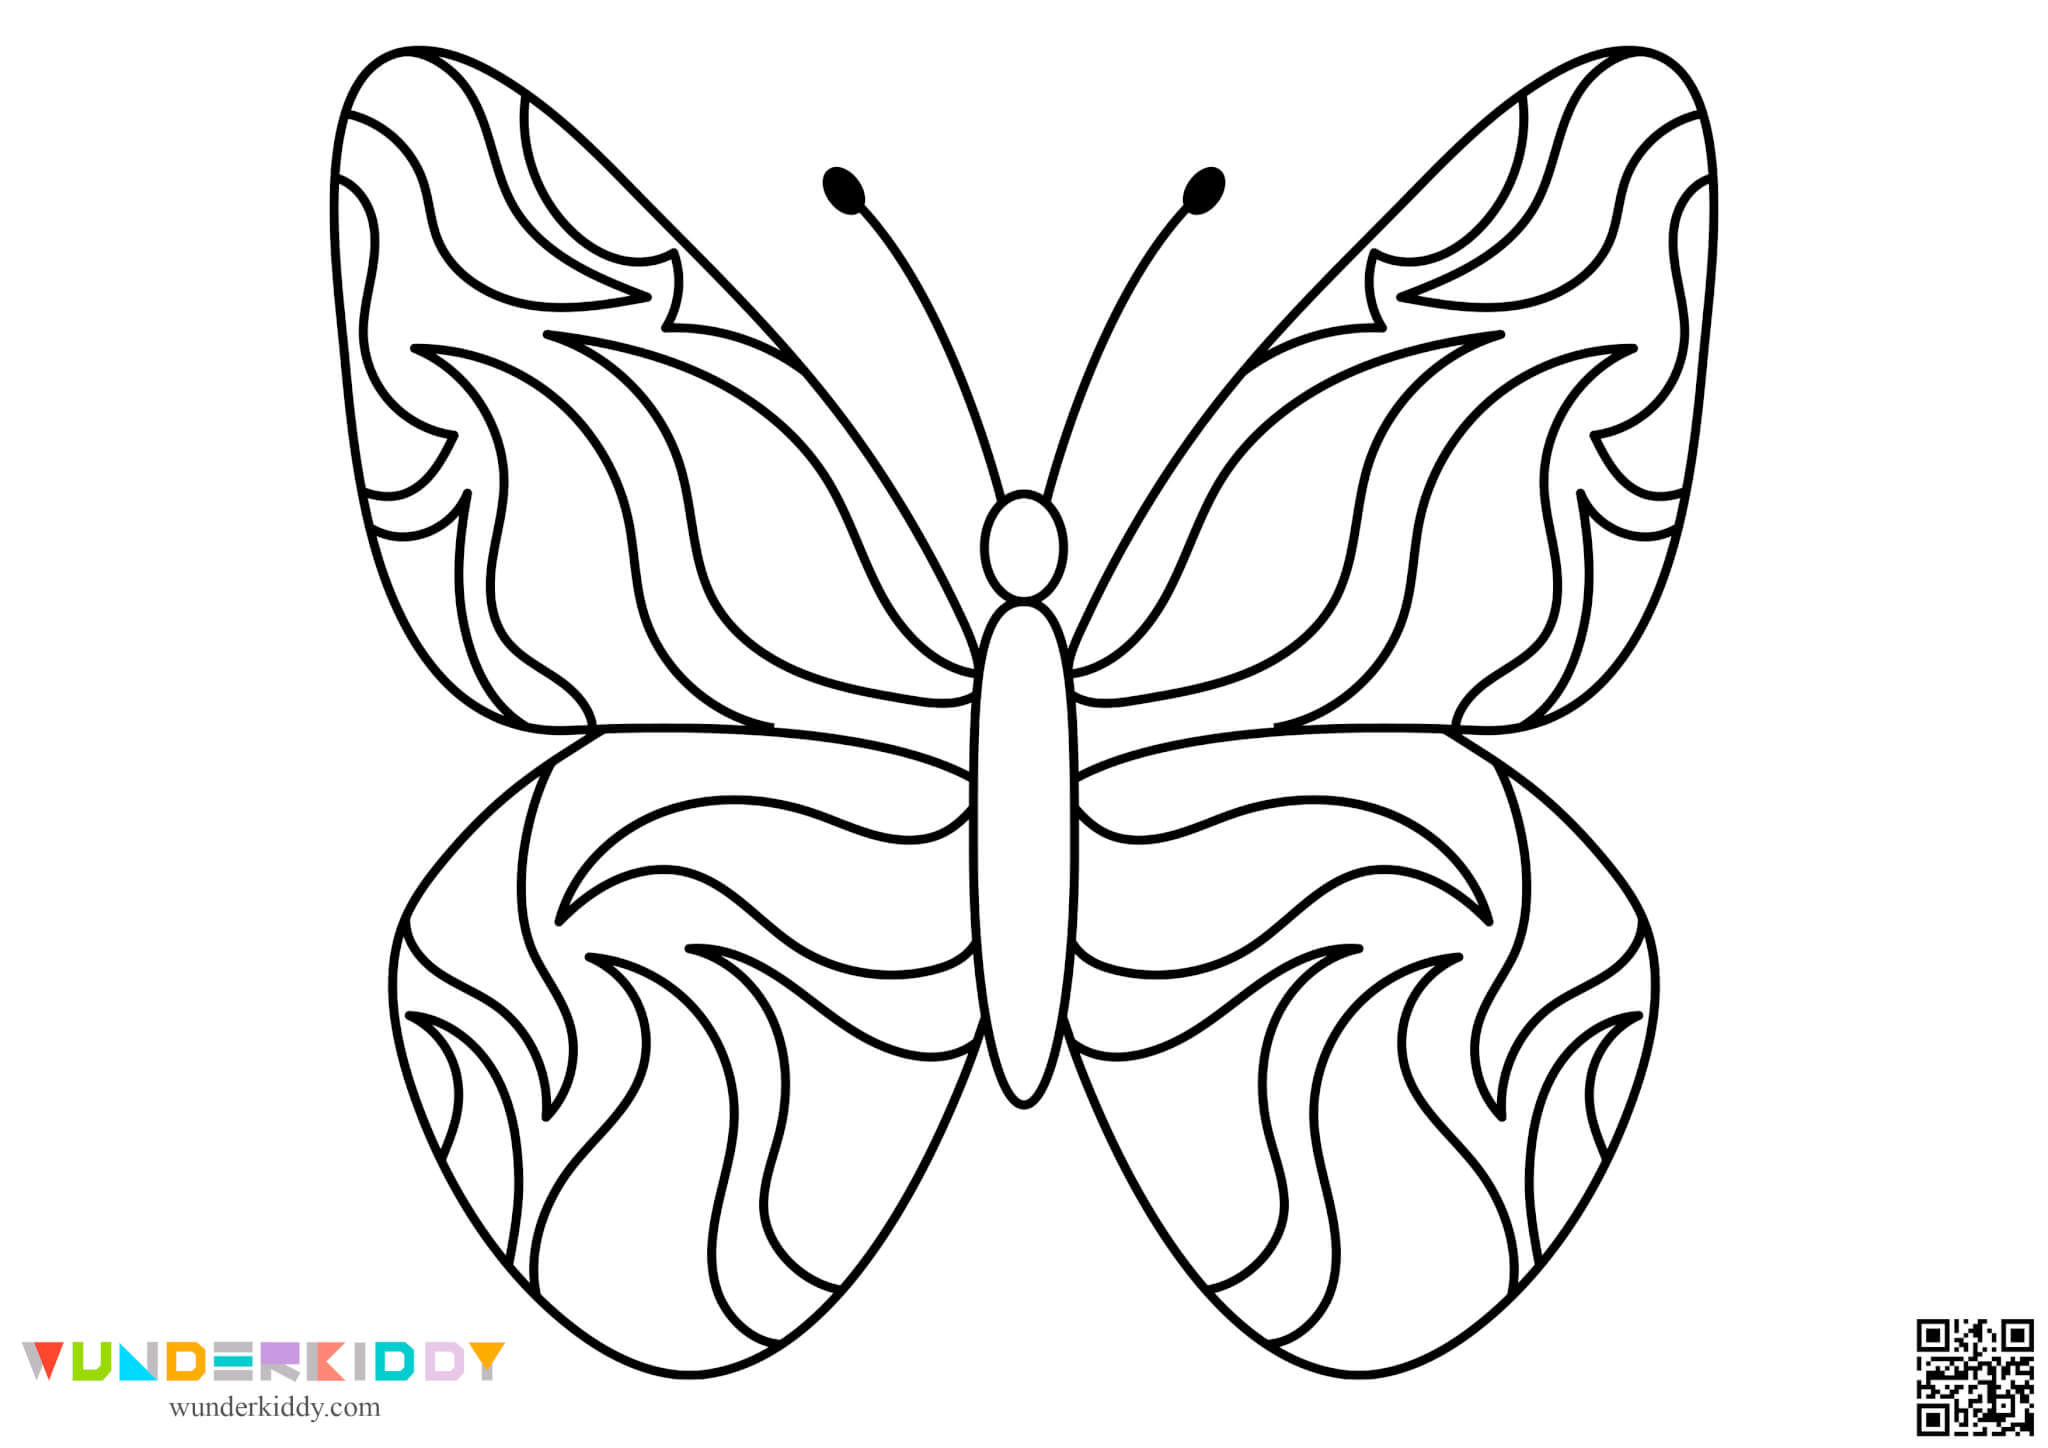 Шаблолоны бабочек для творчества - Изображение 6